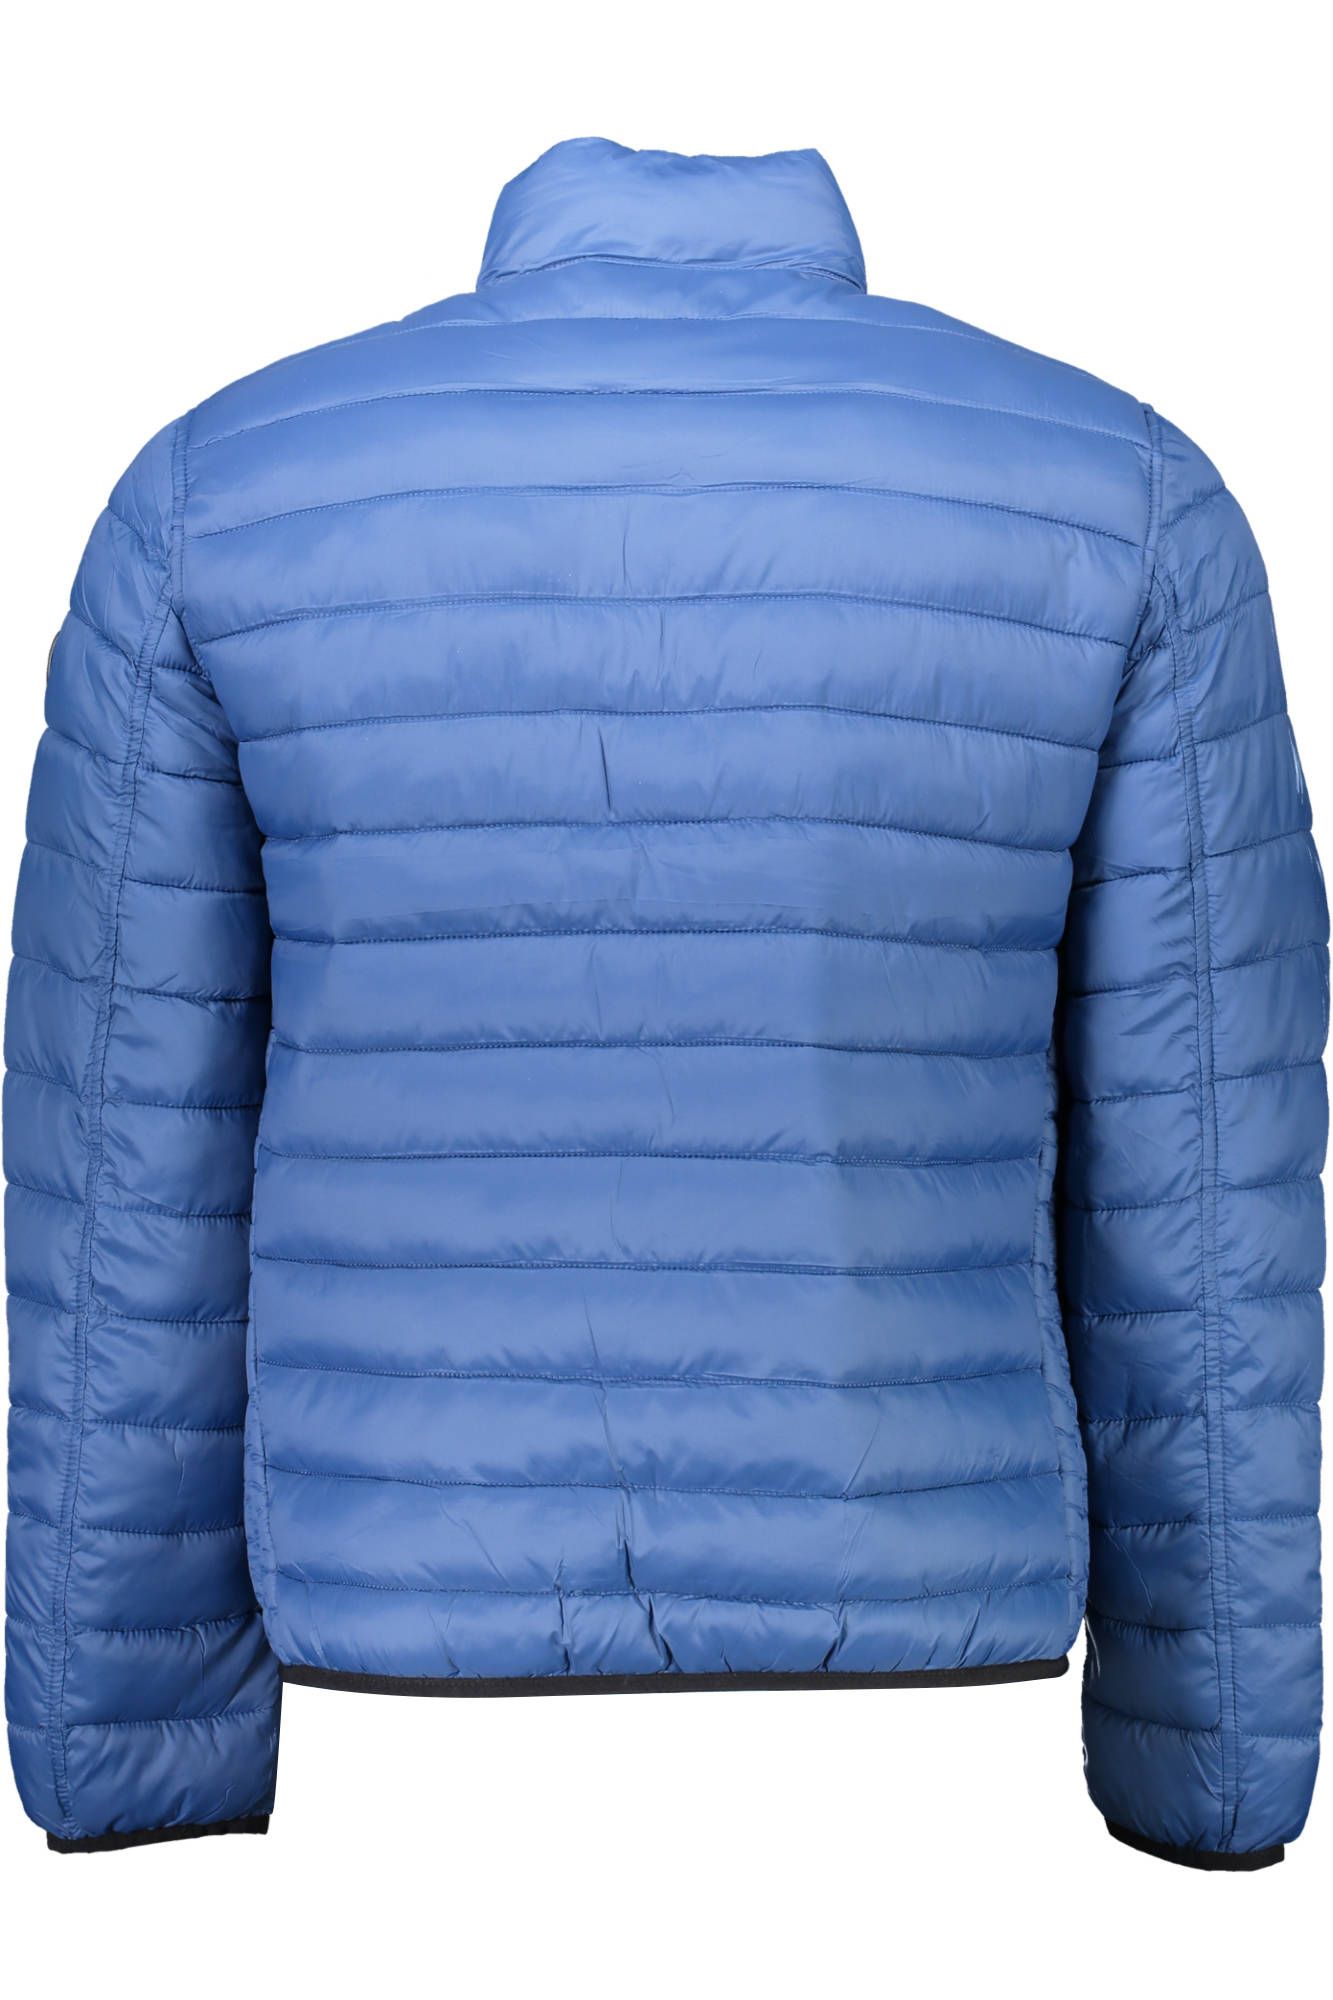 U.S. POLO ASSN. Reversible Long-Sleeve Jacket in Blue